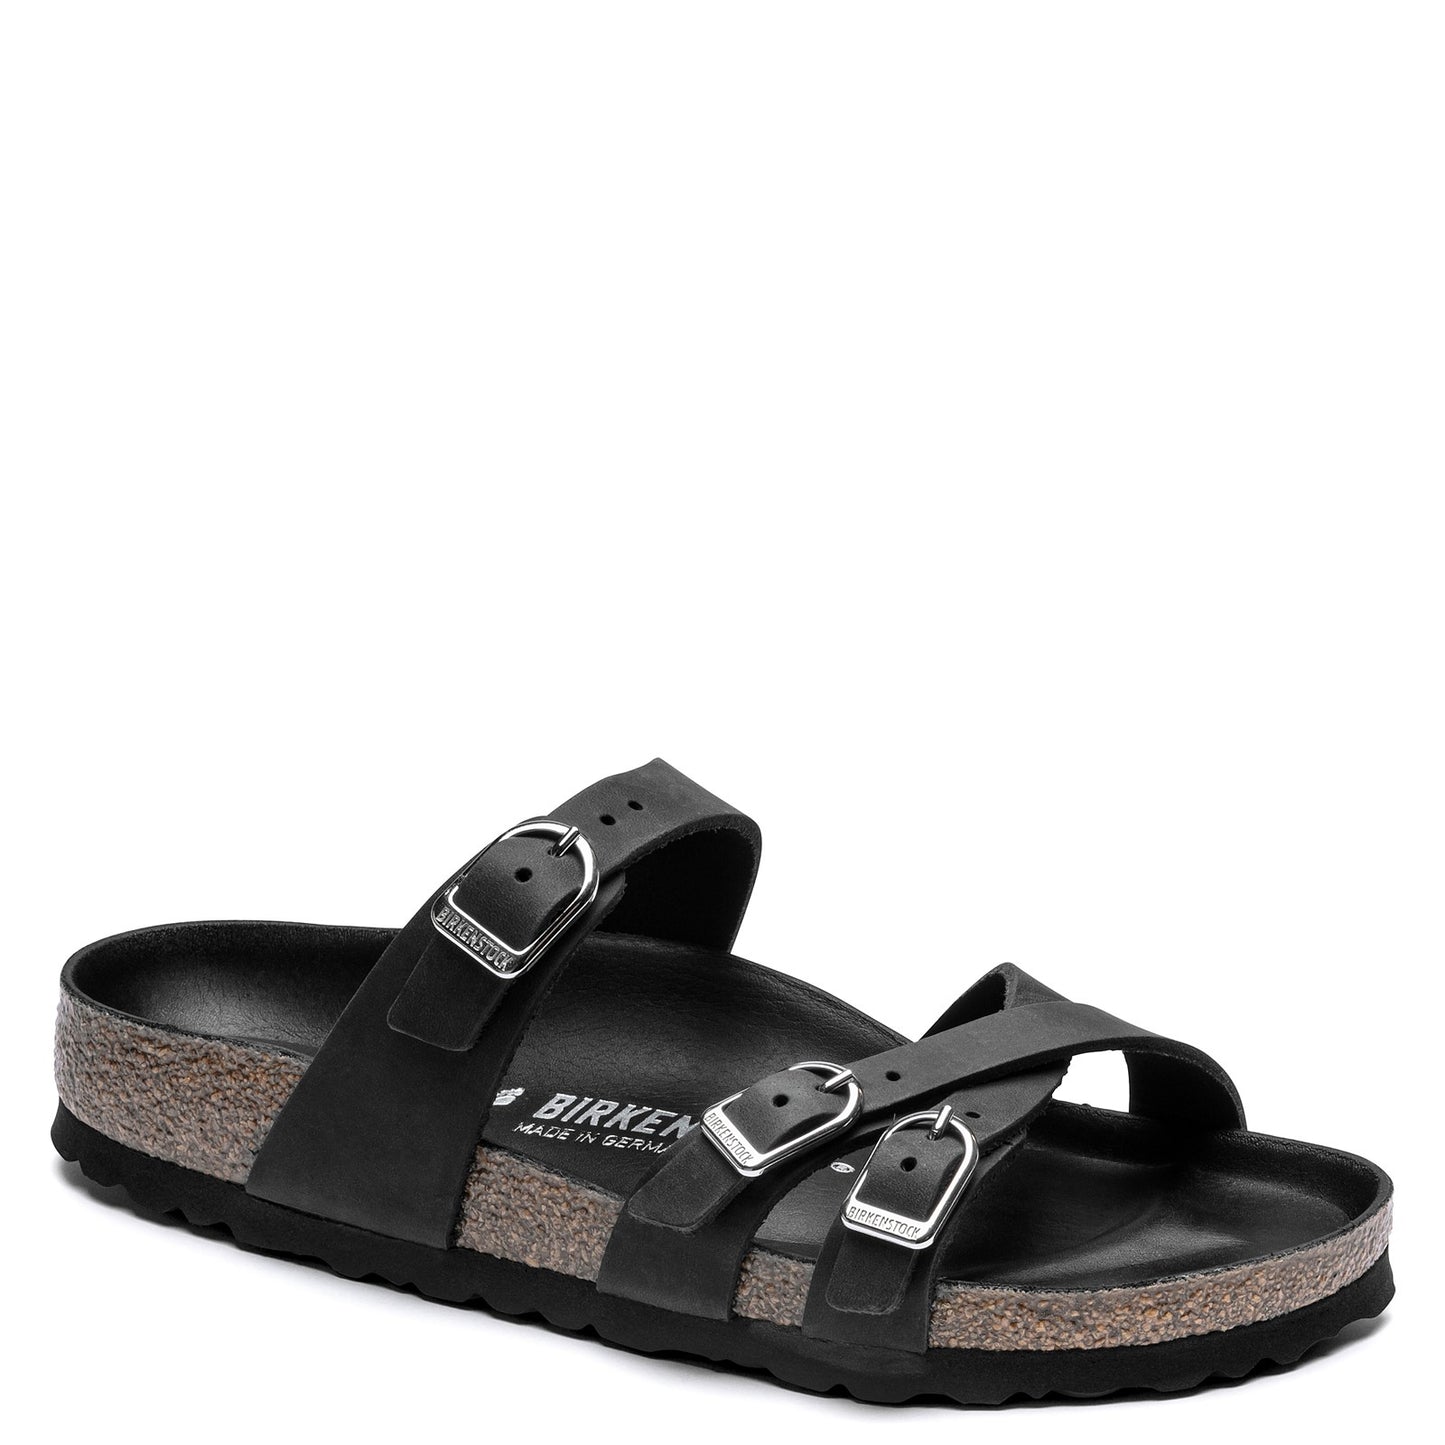 Peltz Shoes  Women's Birkenstock Franca Sandal - Narrow Width BLACK GRAY 1017 566 N